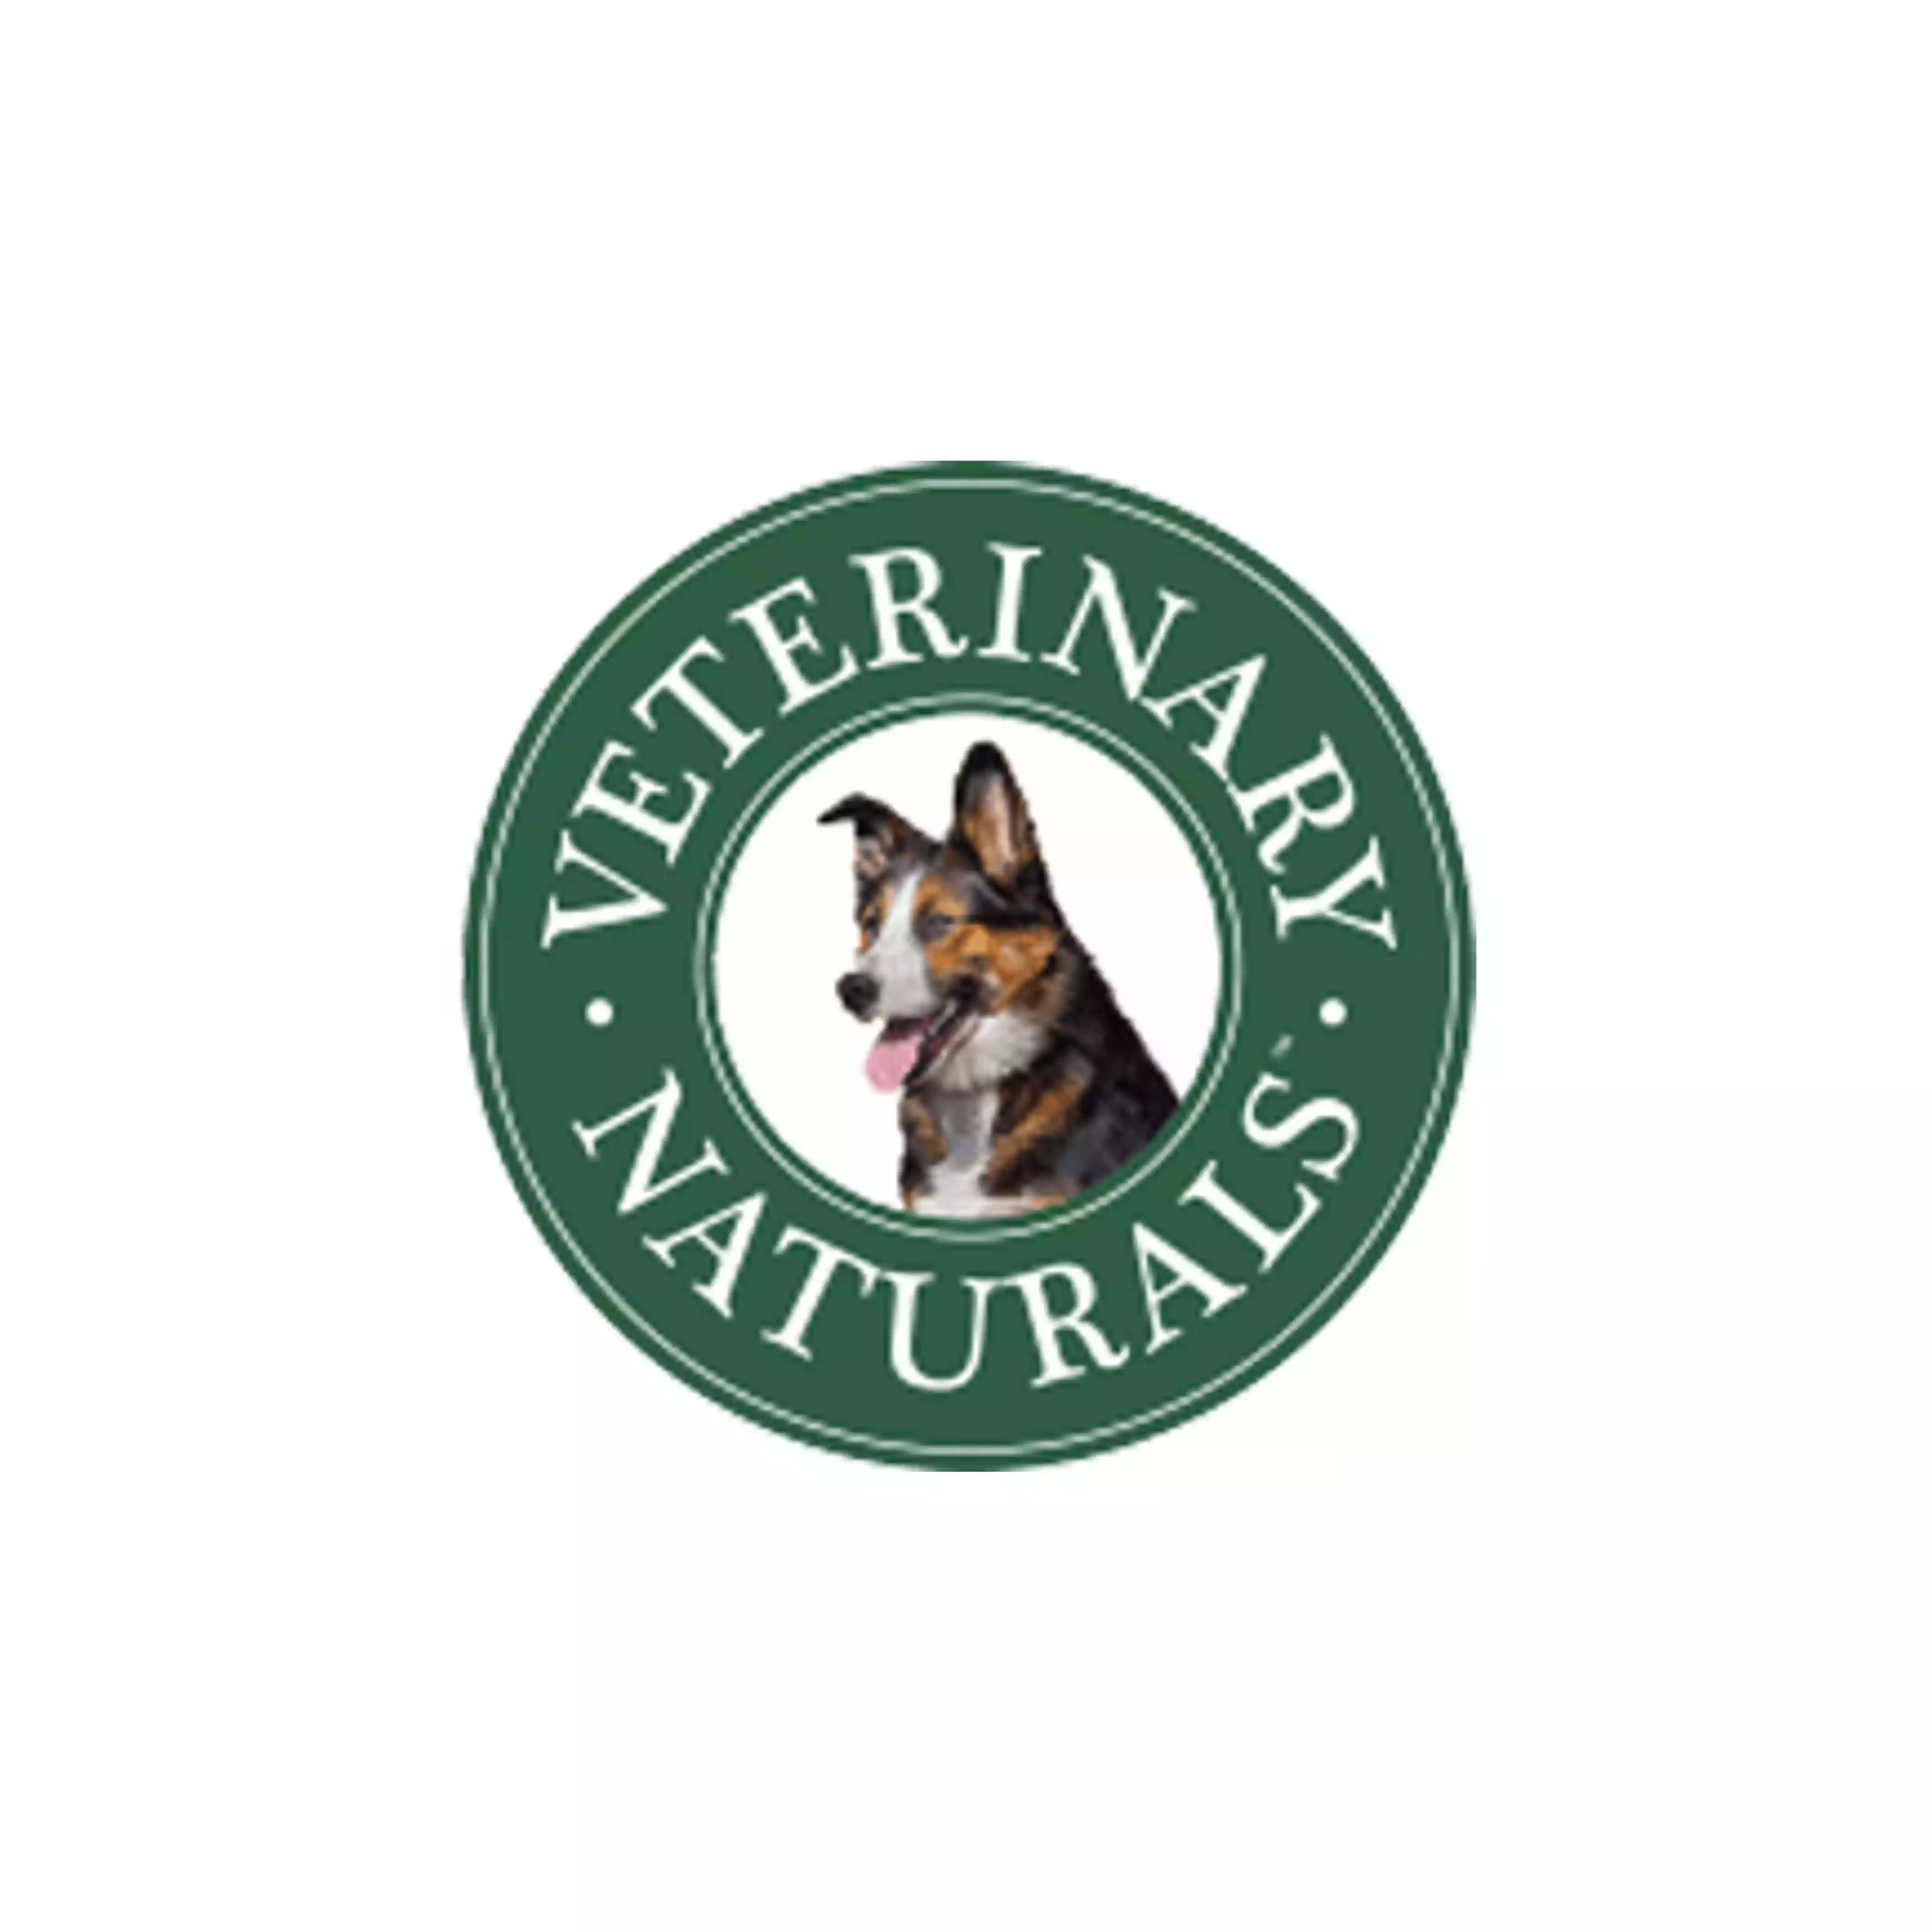 Vet Naturals logo